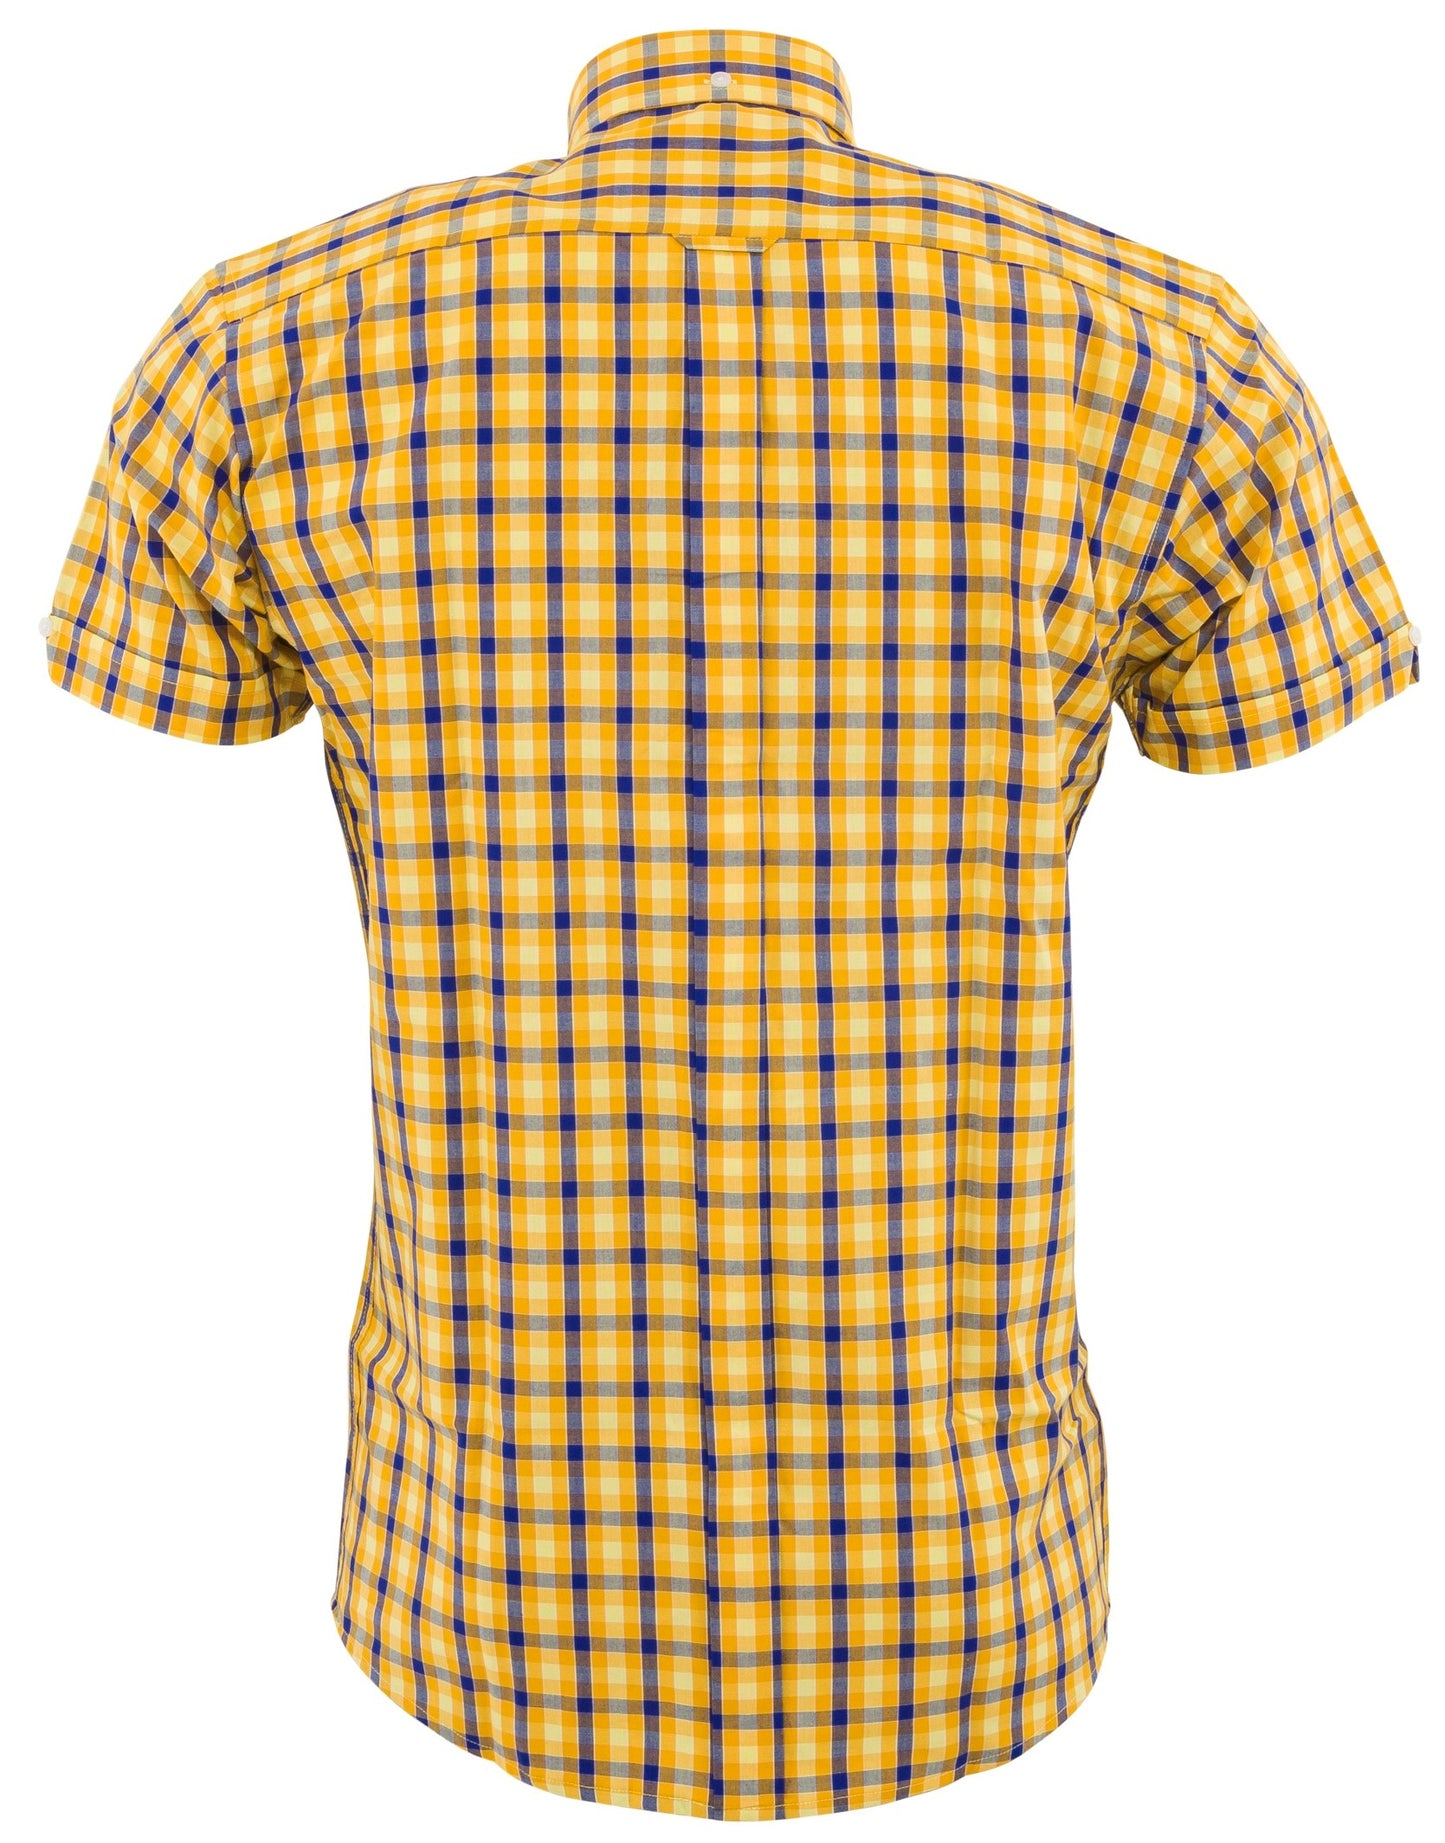 Relco Herren-Hemden mit kurzen Ärmeln und Knöpfen, gelbes Gingham-Karomuster